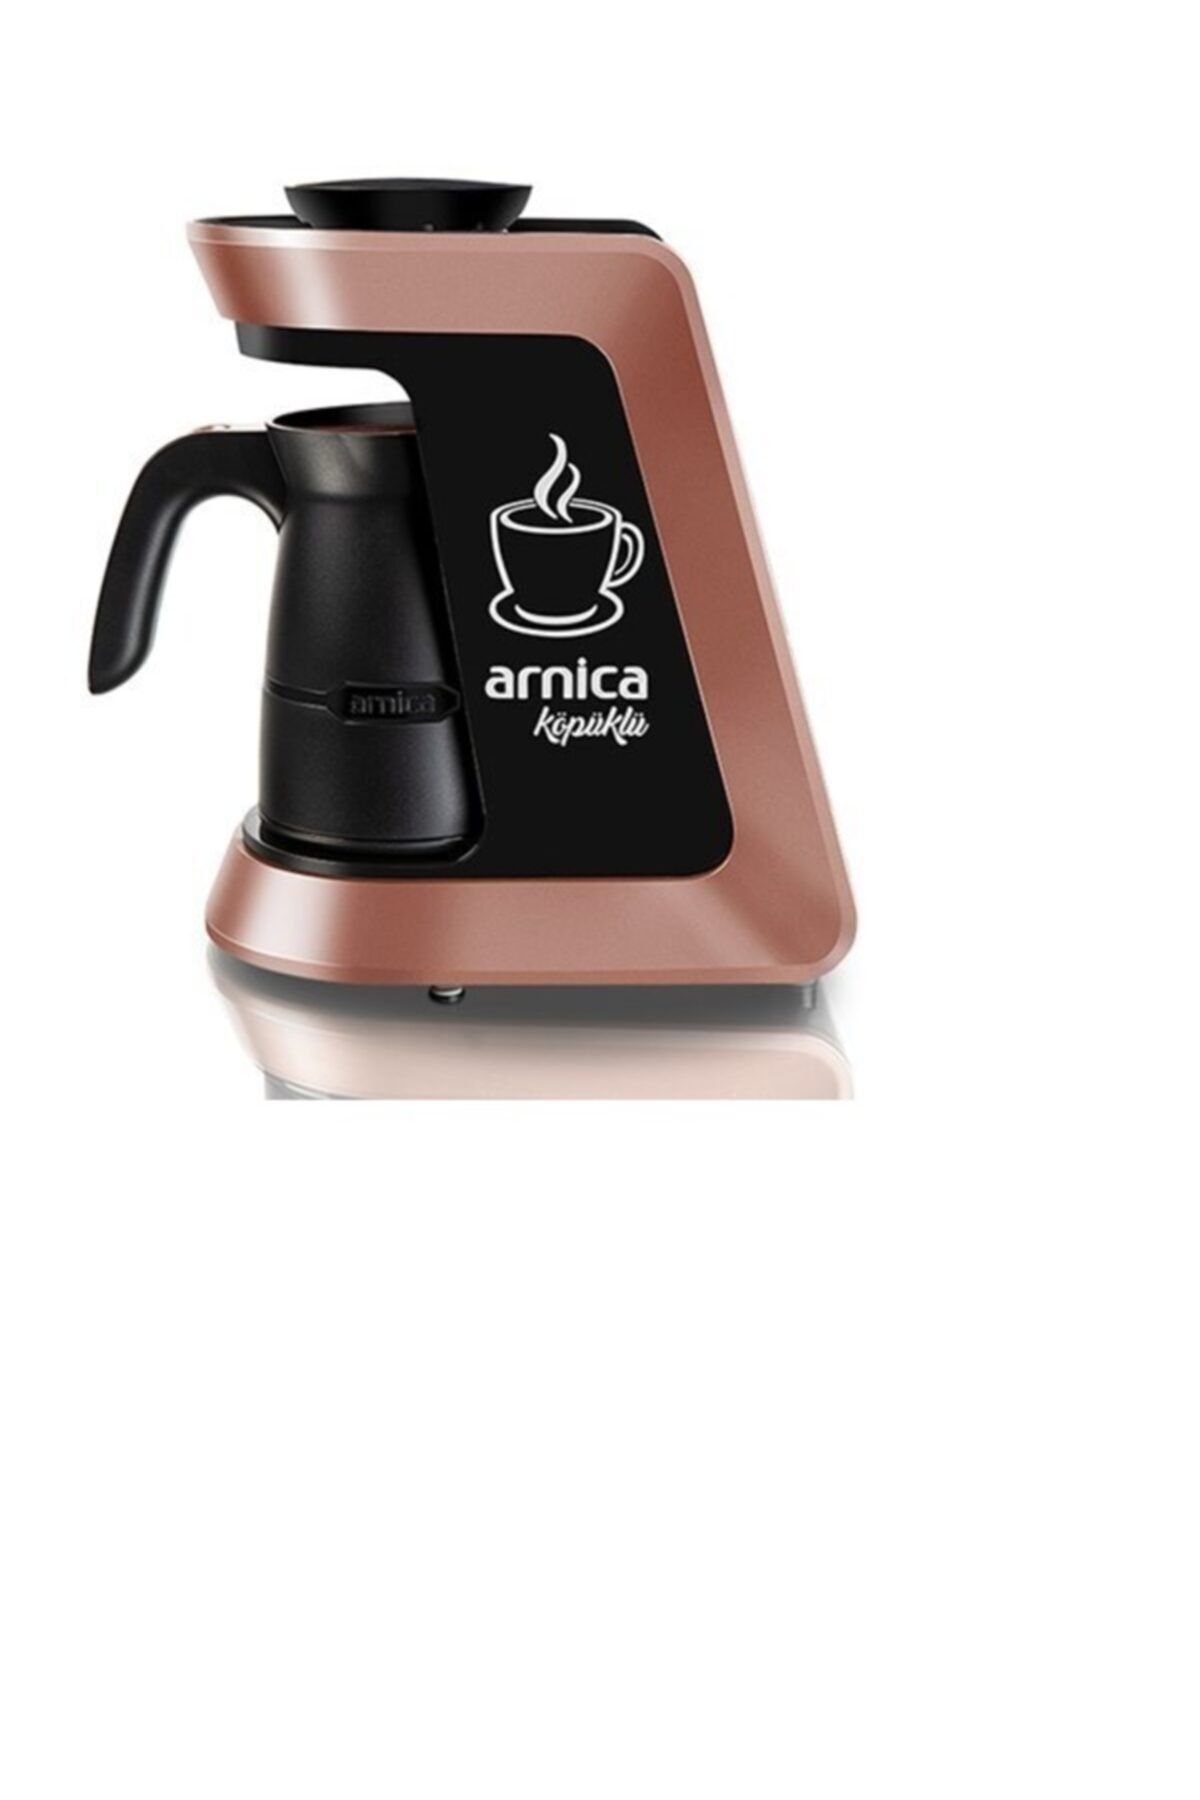 Arnica Köpüklü Kahve Makinası